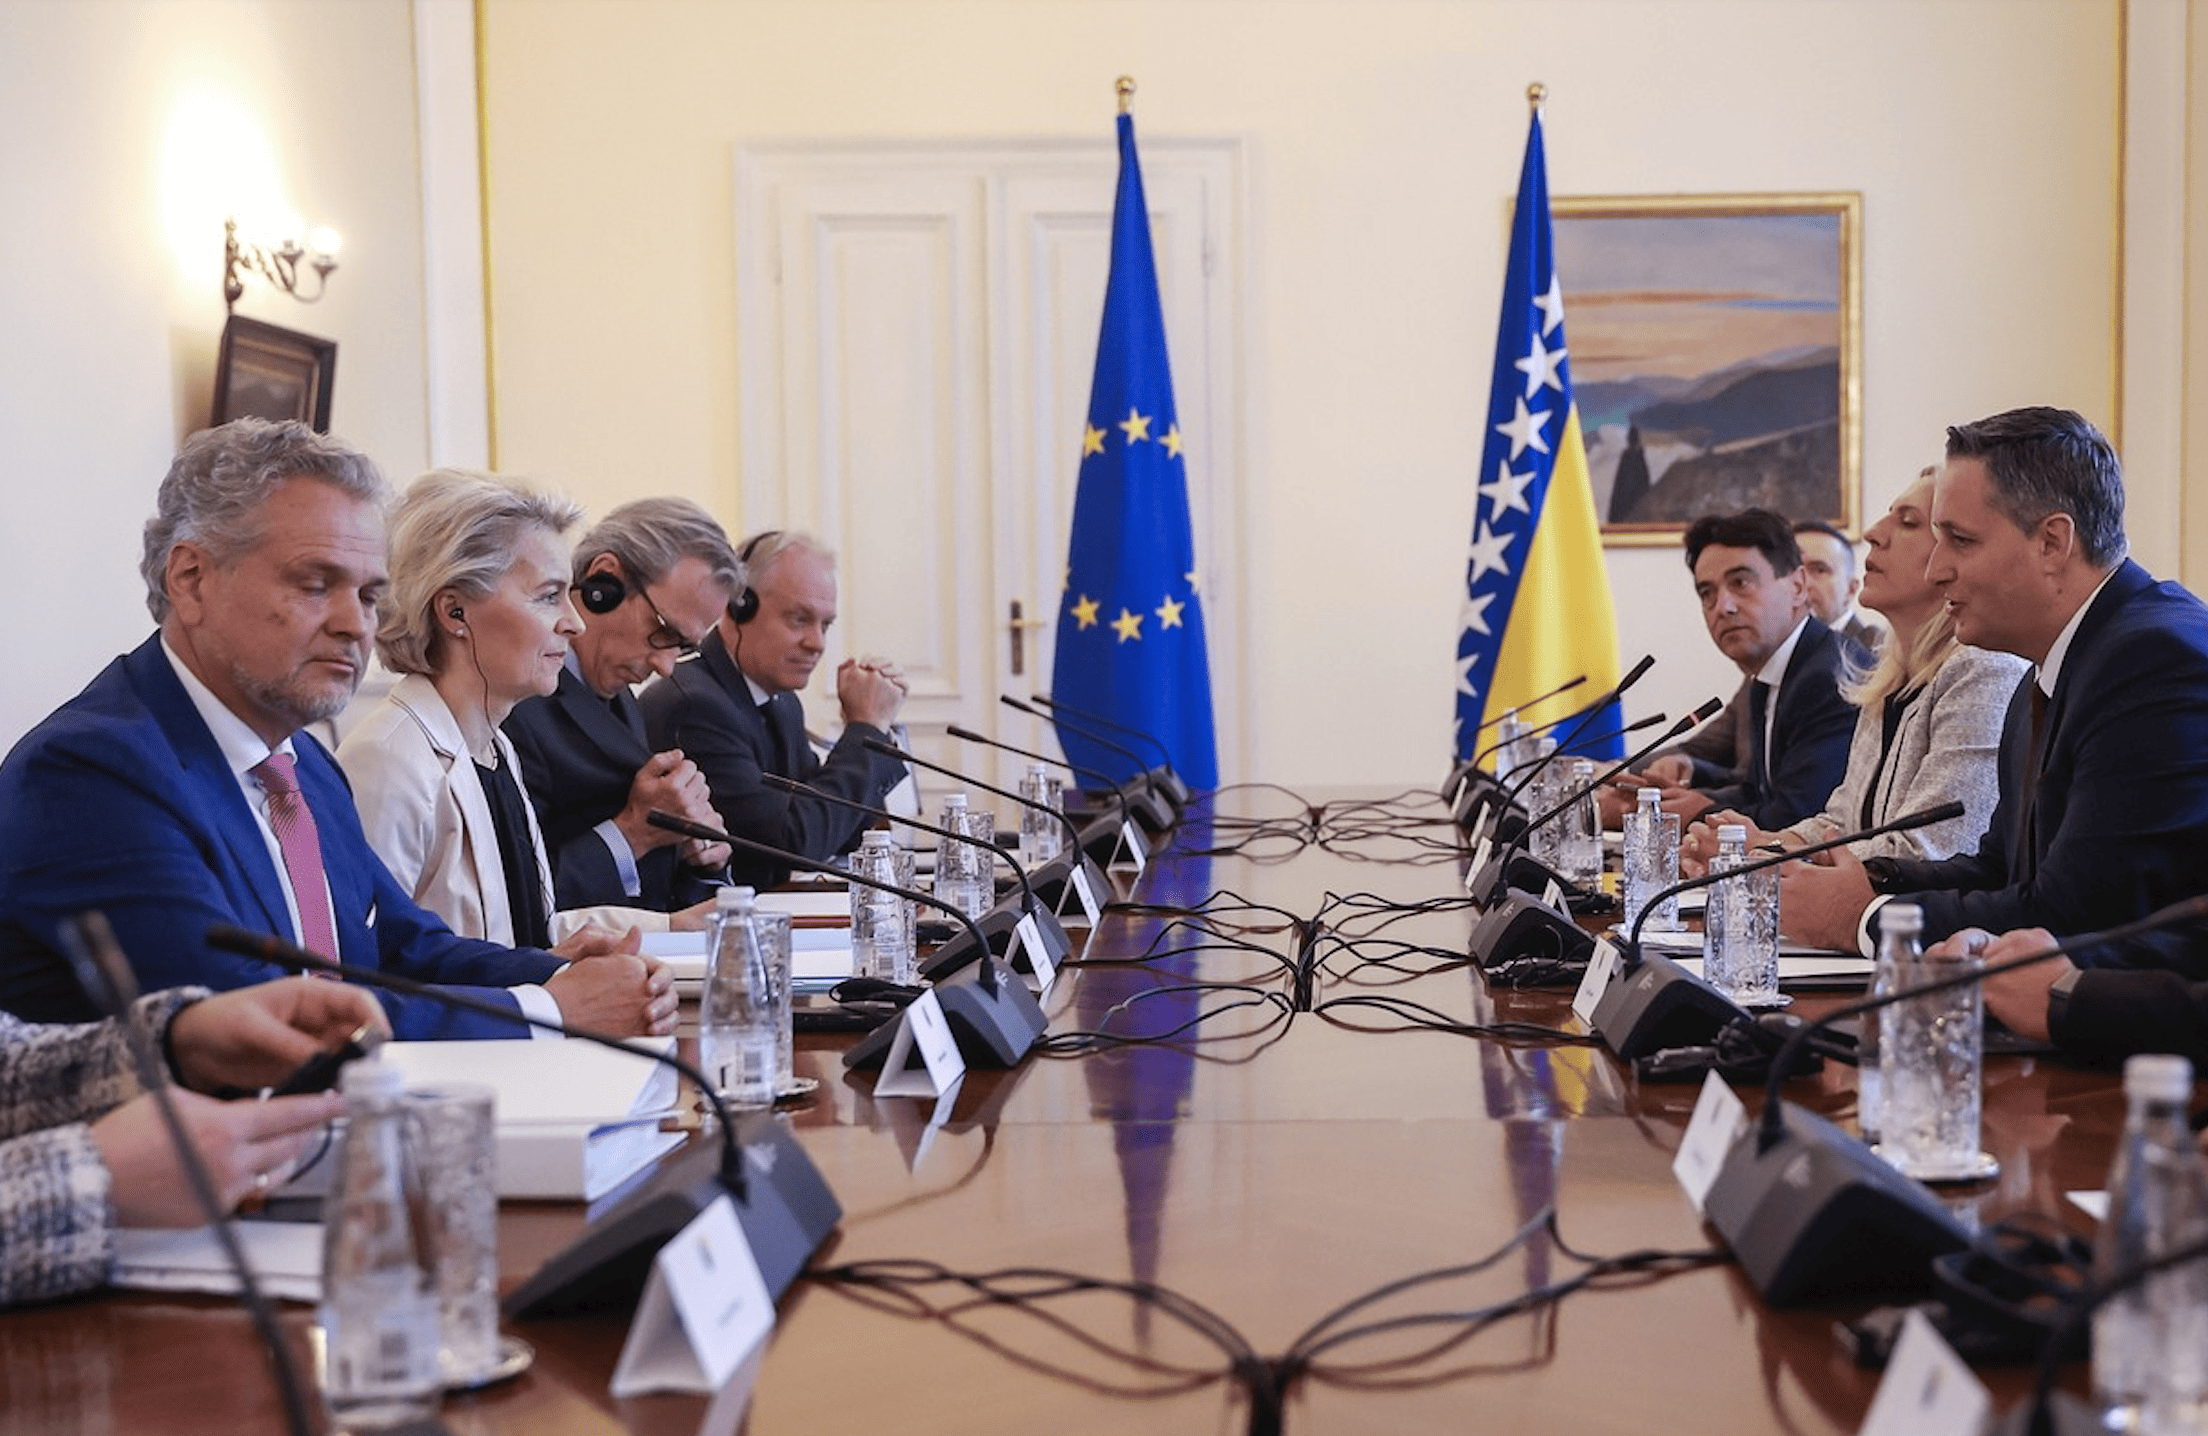 Přečtete si více ze článku Komise doporučila začít jednání o vstupu Ukrajiny, Moldavska a Bosny do EU